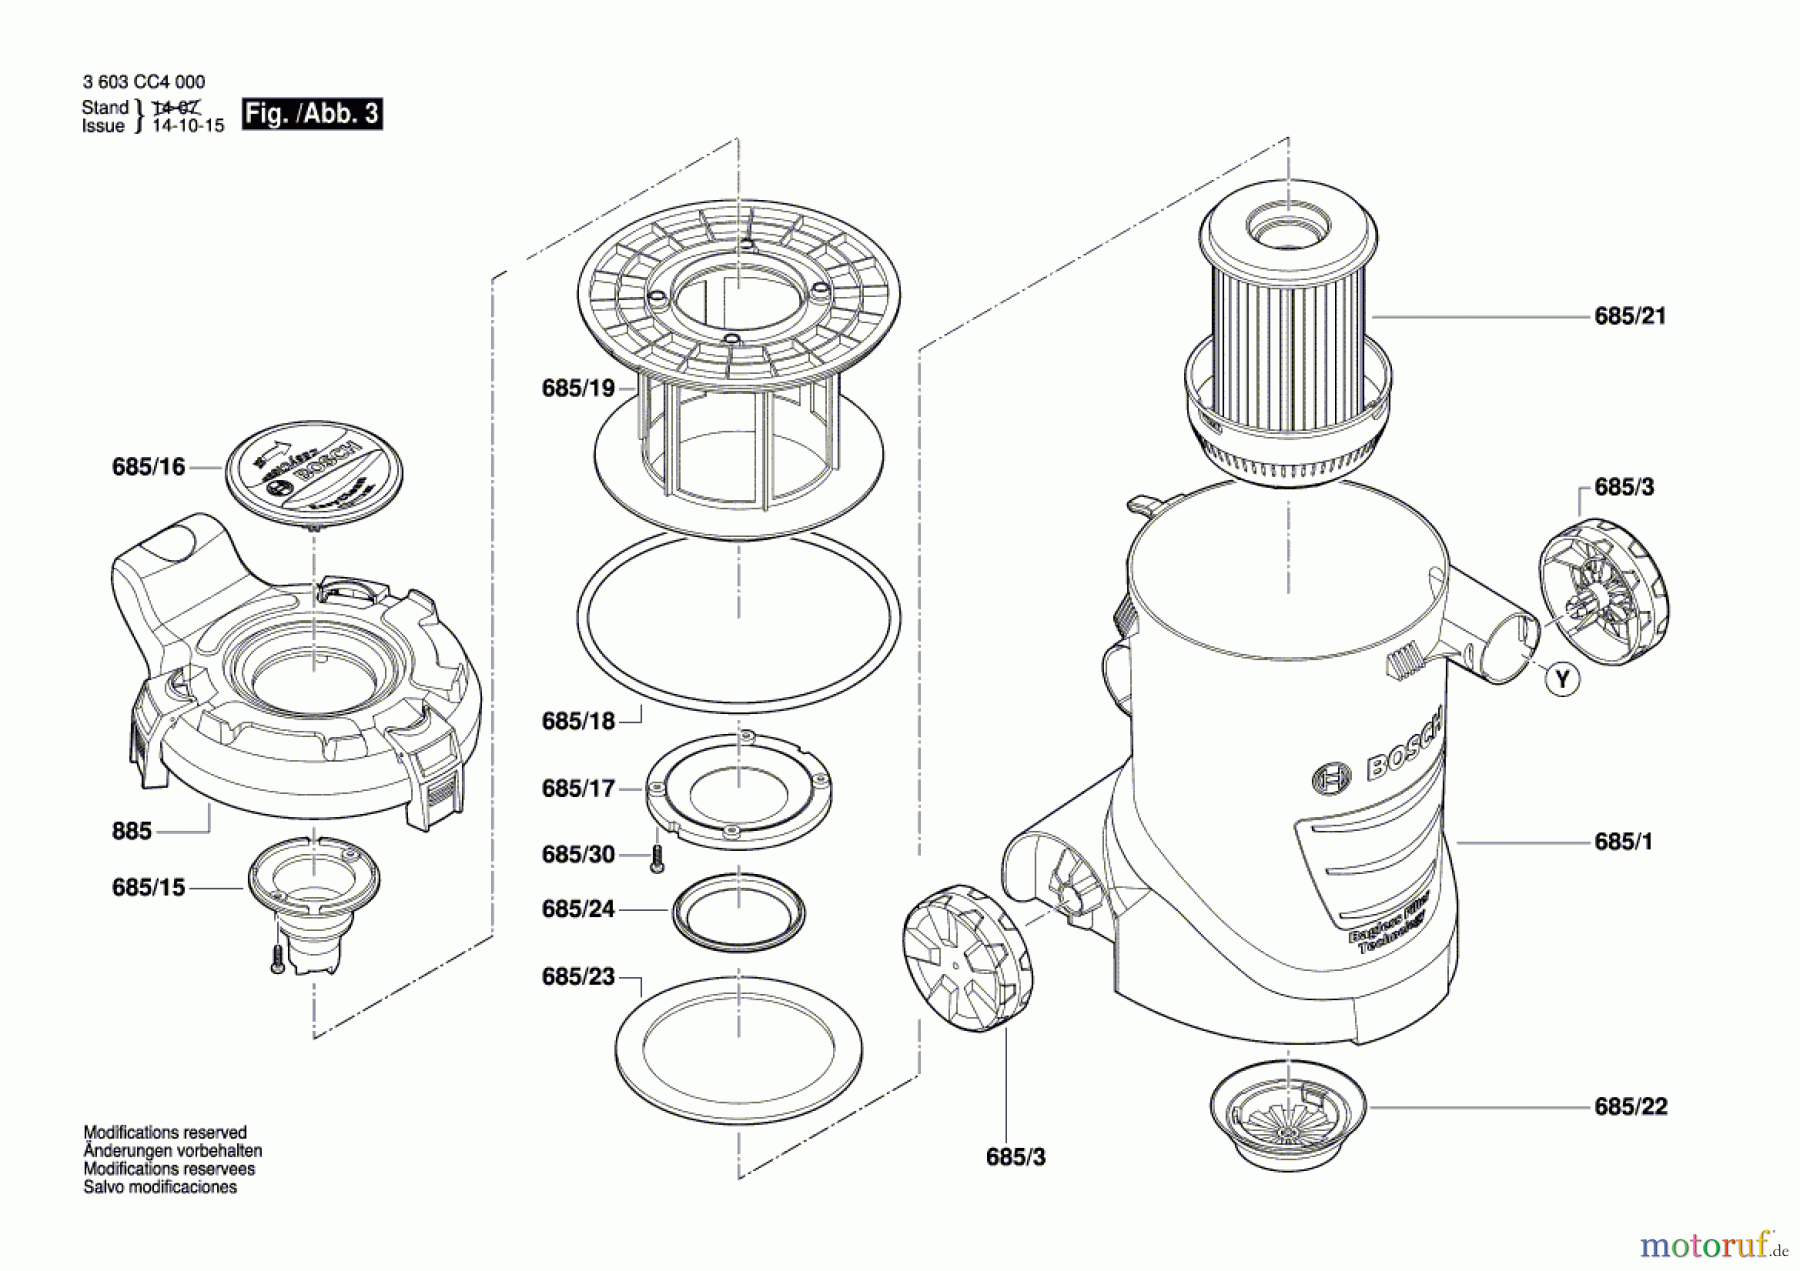  Bosch Werkzeug Trockenbauschleifer PWR 180 CE Seite 3